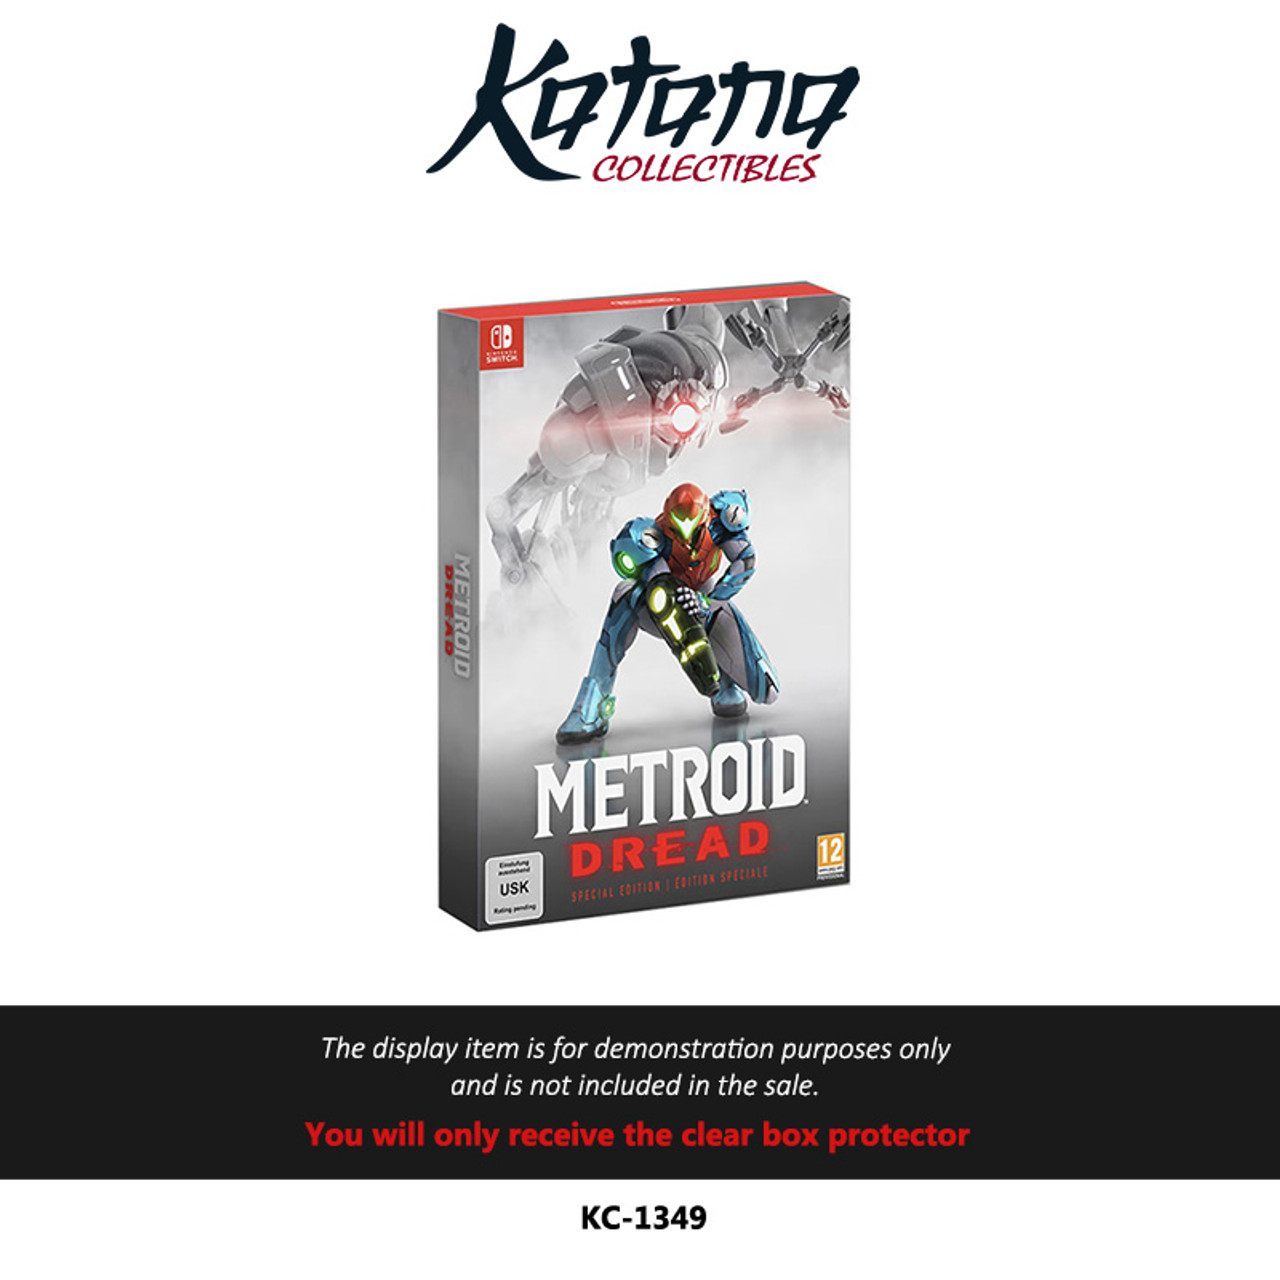 Katana Collectibles Protector For Metroid Dread Special Edition - EU Version